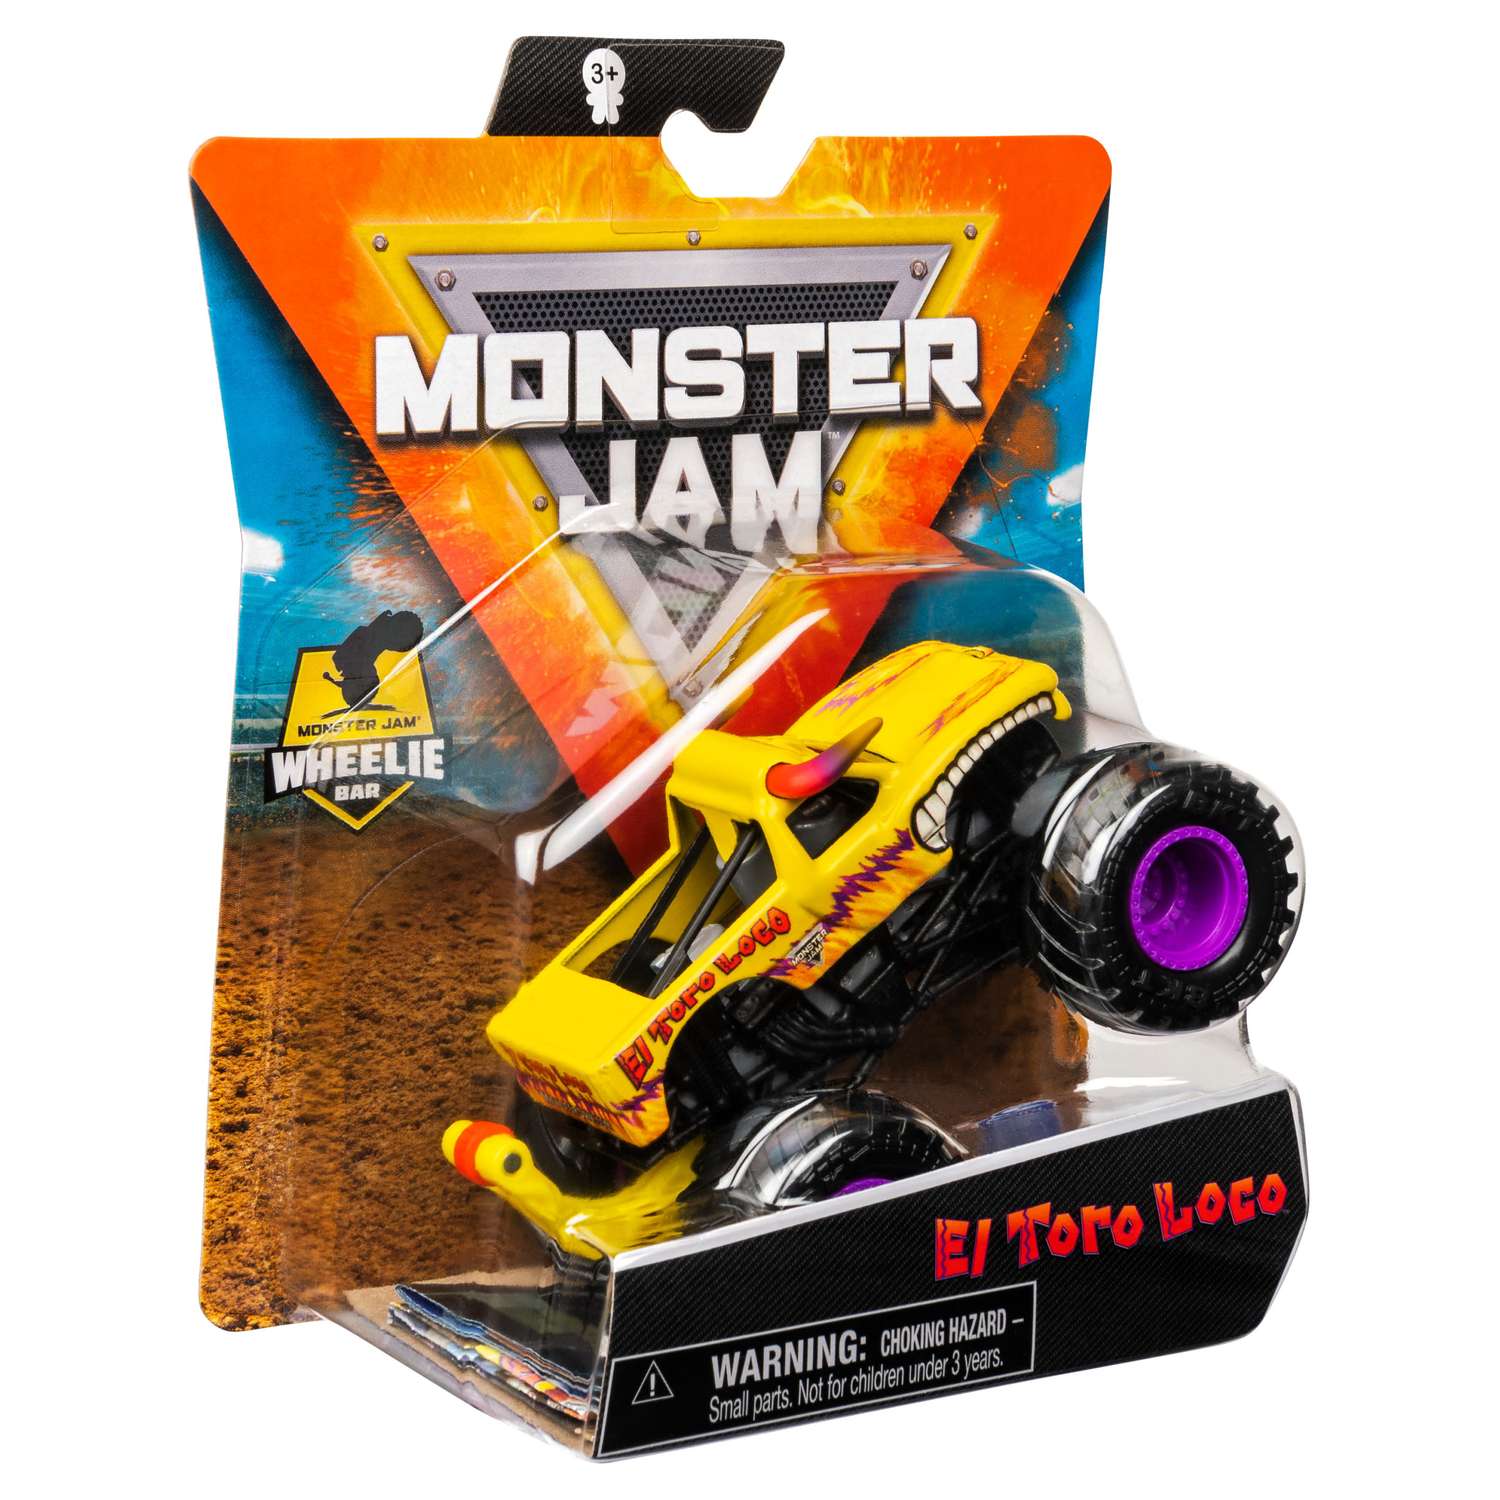 Машинка Monster Jam 1:64 El Toro Loco Yellow 6044941/20130599 6044941 - фото 2